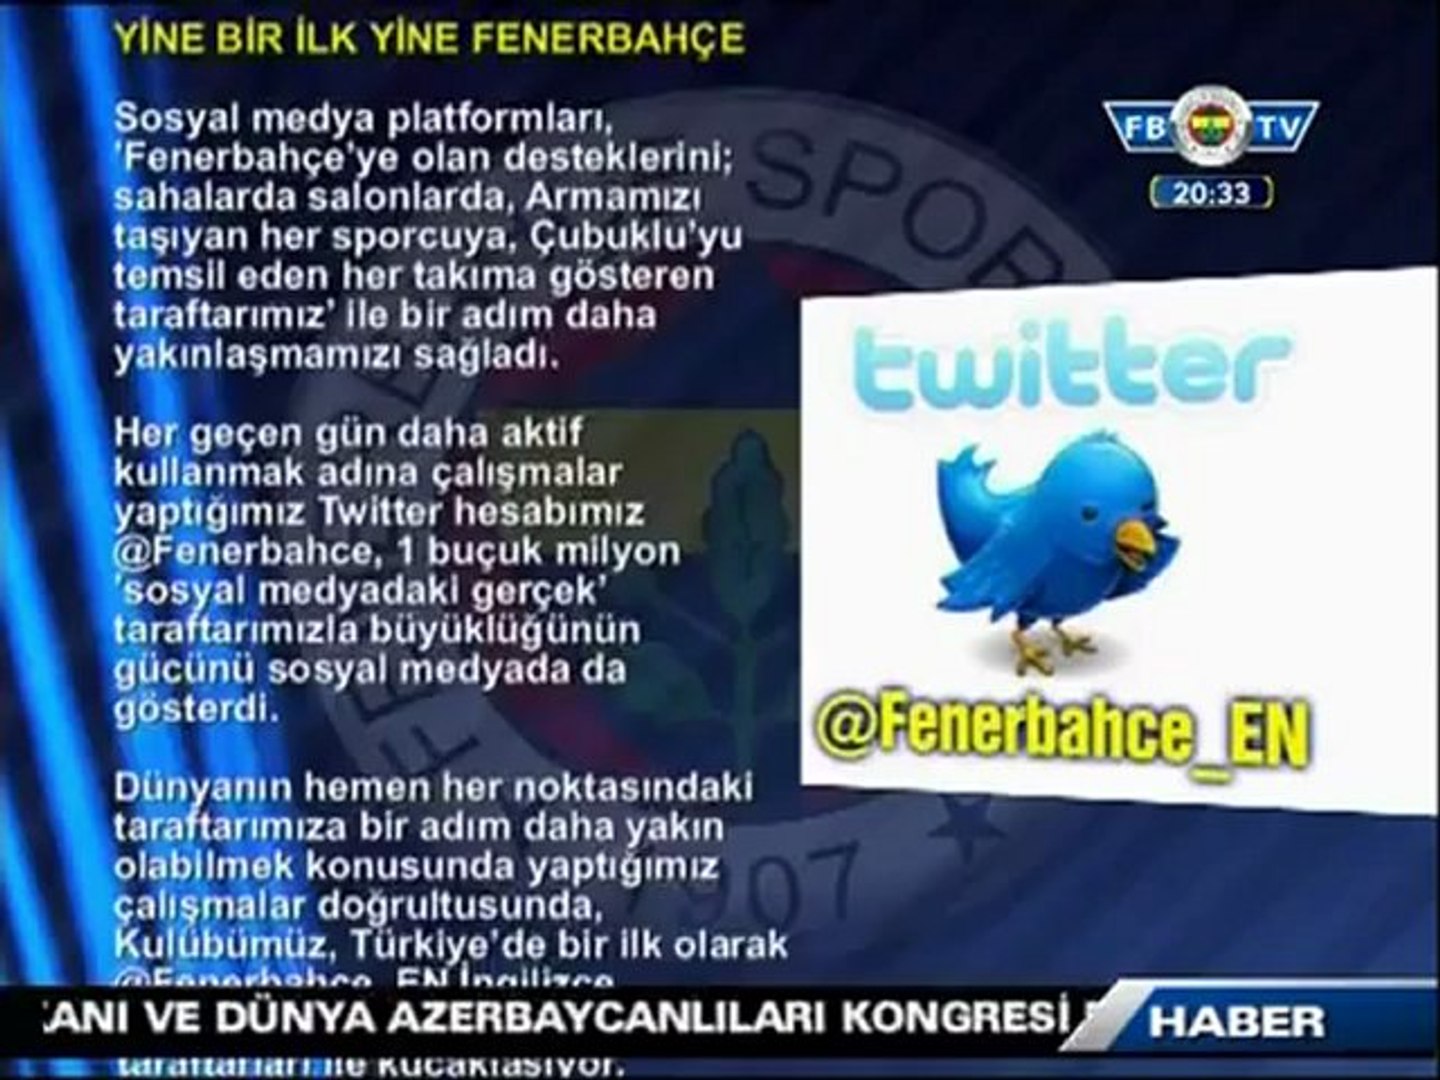 Fenerbahçe Spor Kulubü'nden Yine Bir İlk Fenerbahçe İngilizce Twitter  Sayfası - Dailymotion Video